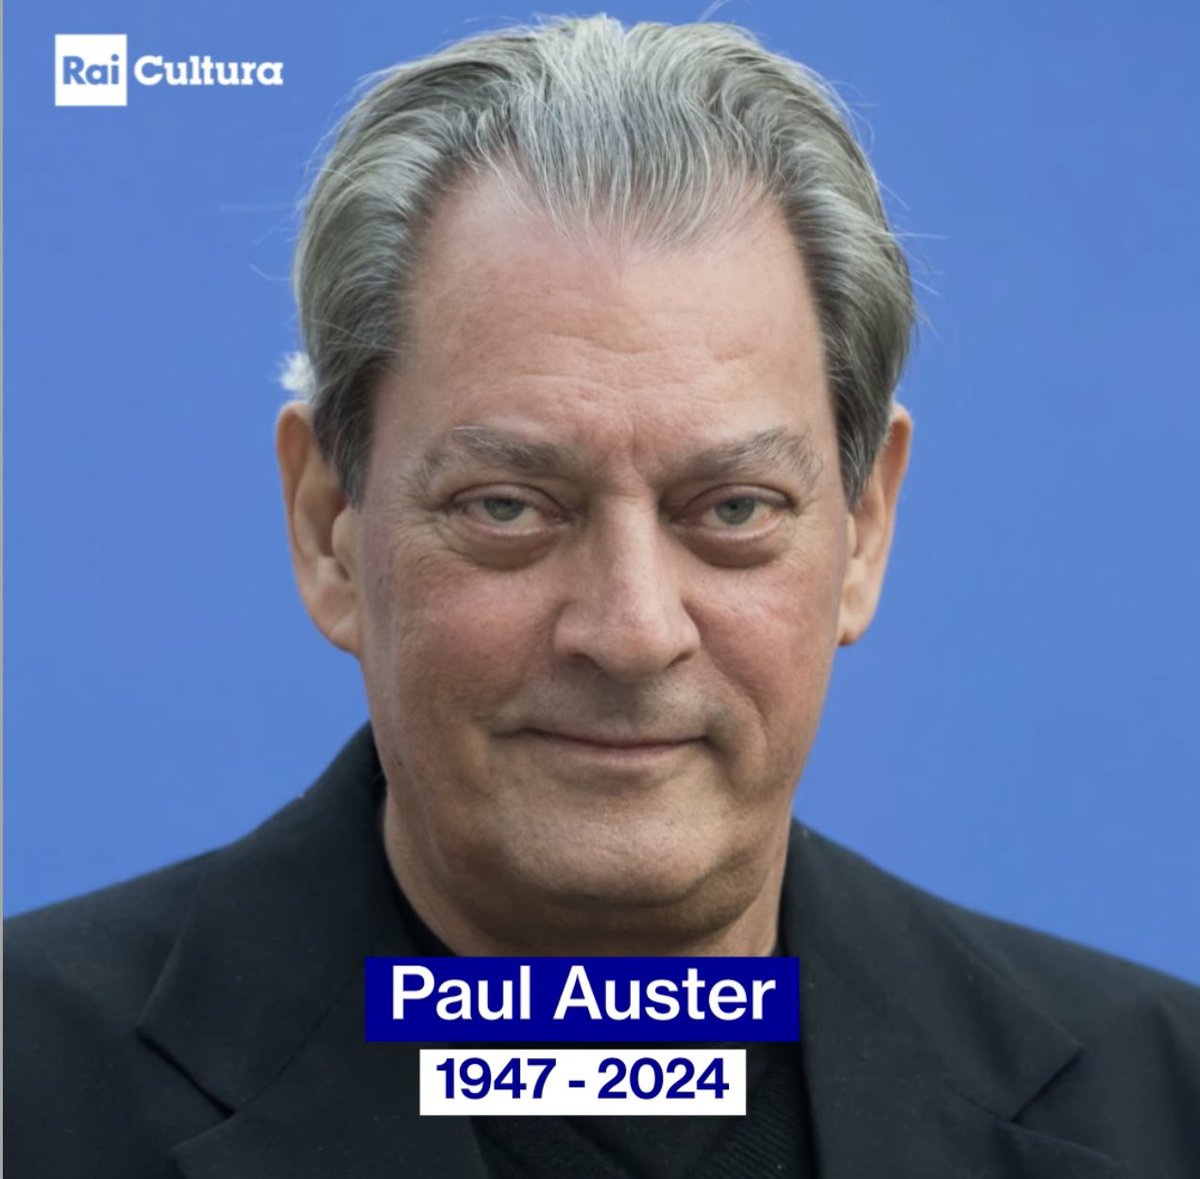 Addio allo scrittore statunitense #PaulAuster #RaiCultura